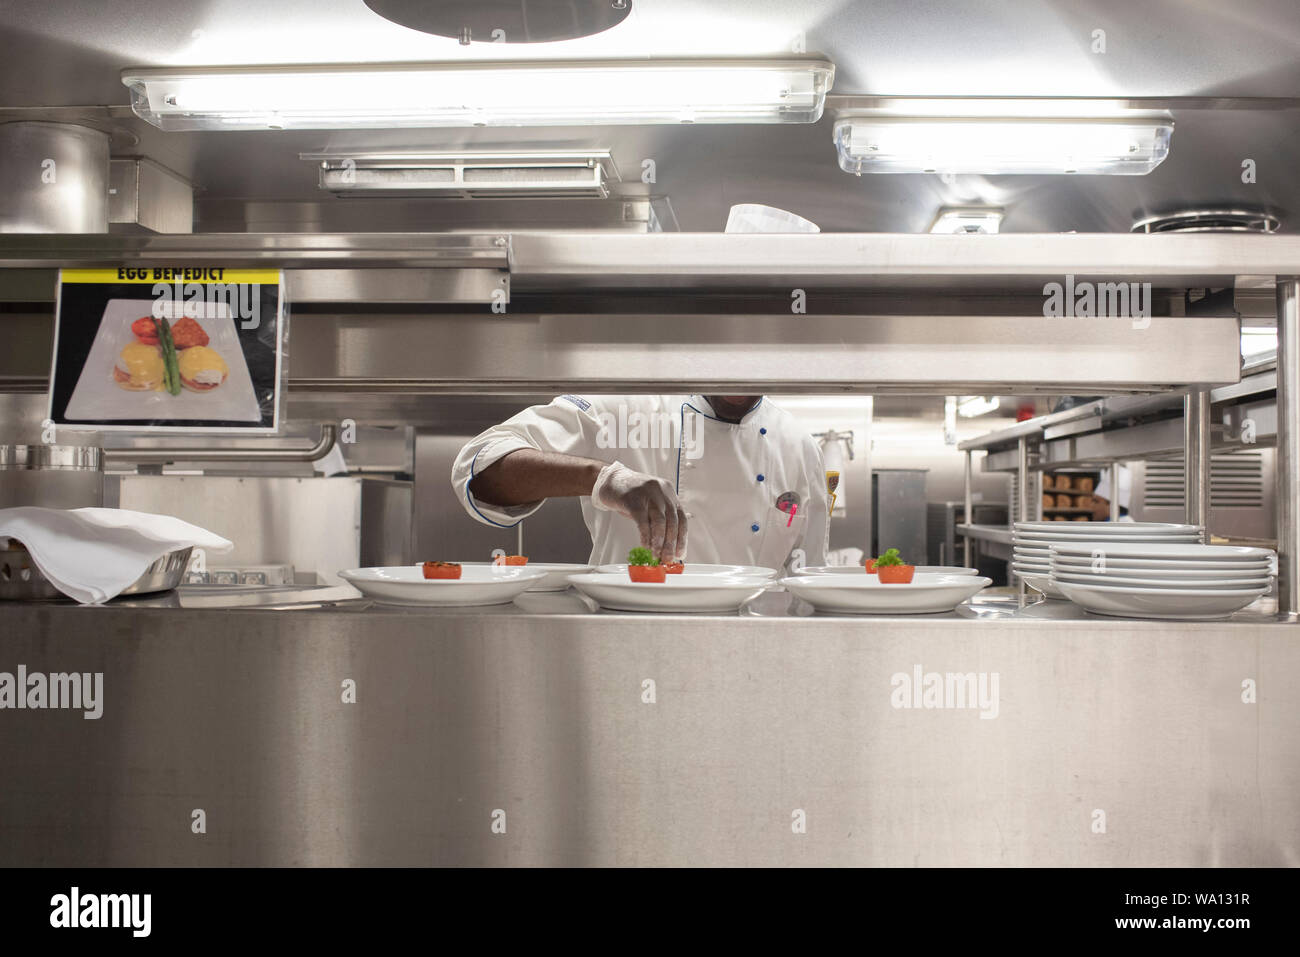 Près de 1000 personnes en Küche travaillent à un rythme effréné. Les entrées, Les plats et les Desserts sind préparés dans les différents endroits. Stockfoto